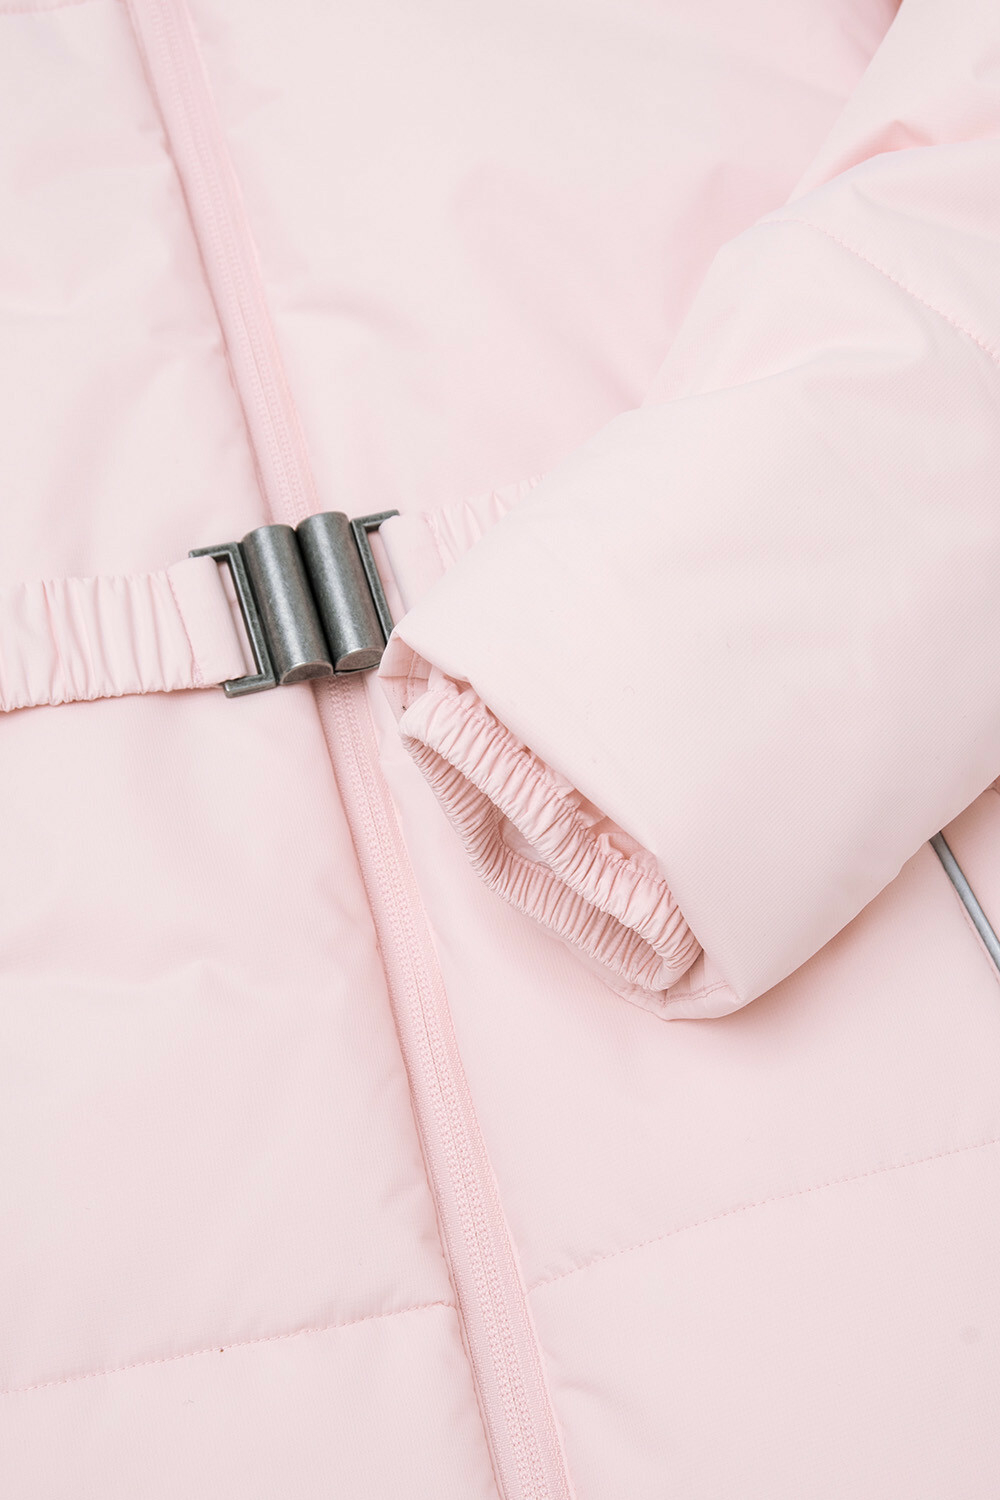 CROCKID Куртка удлиненная для девочки розовая